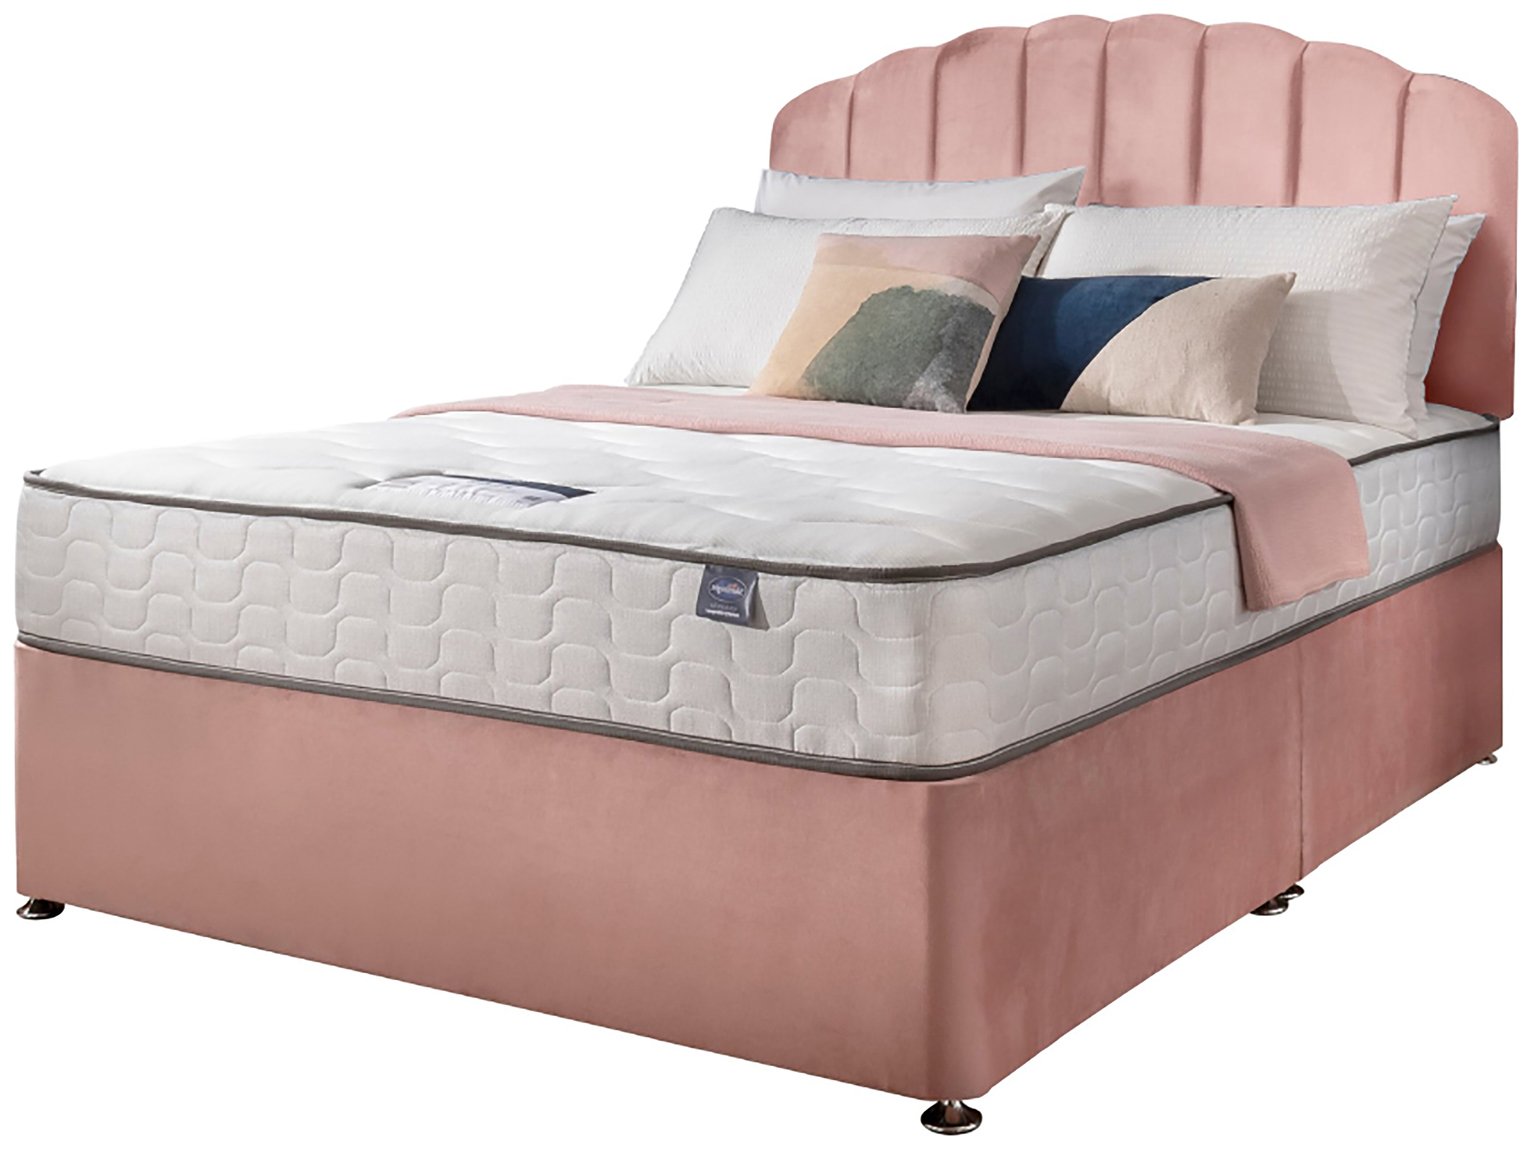 Silentnight Middleton Kingsize Comfort Divan Bed - Pink